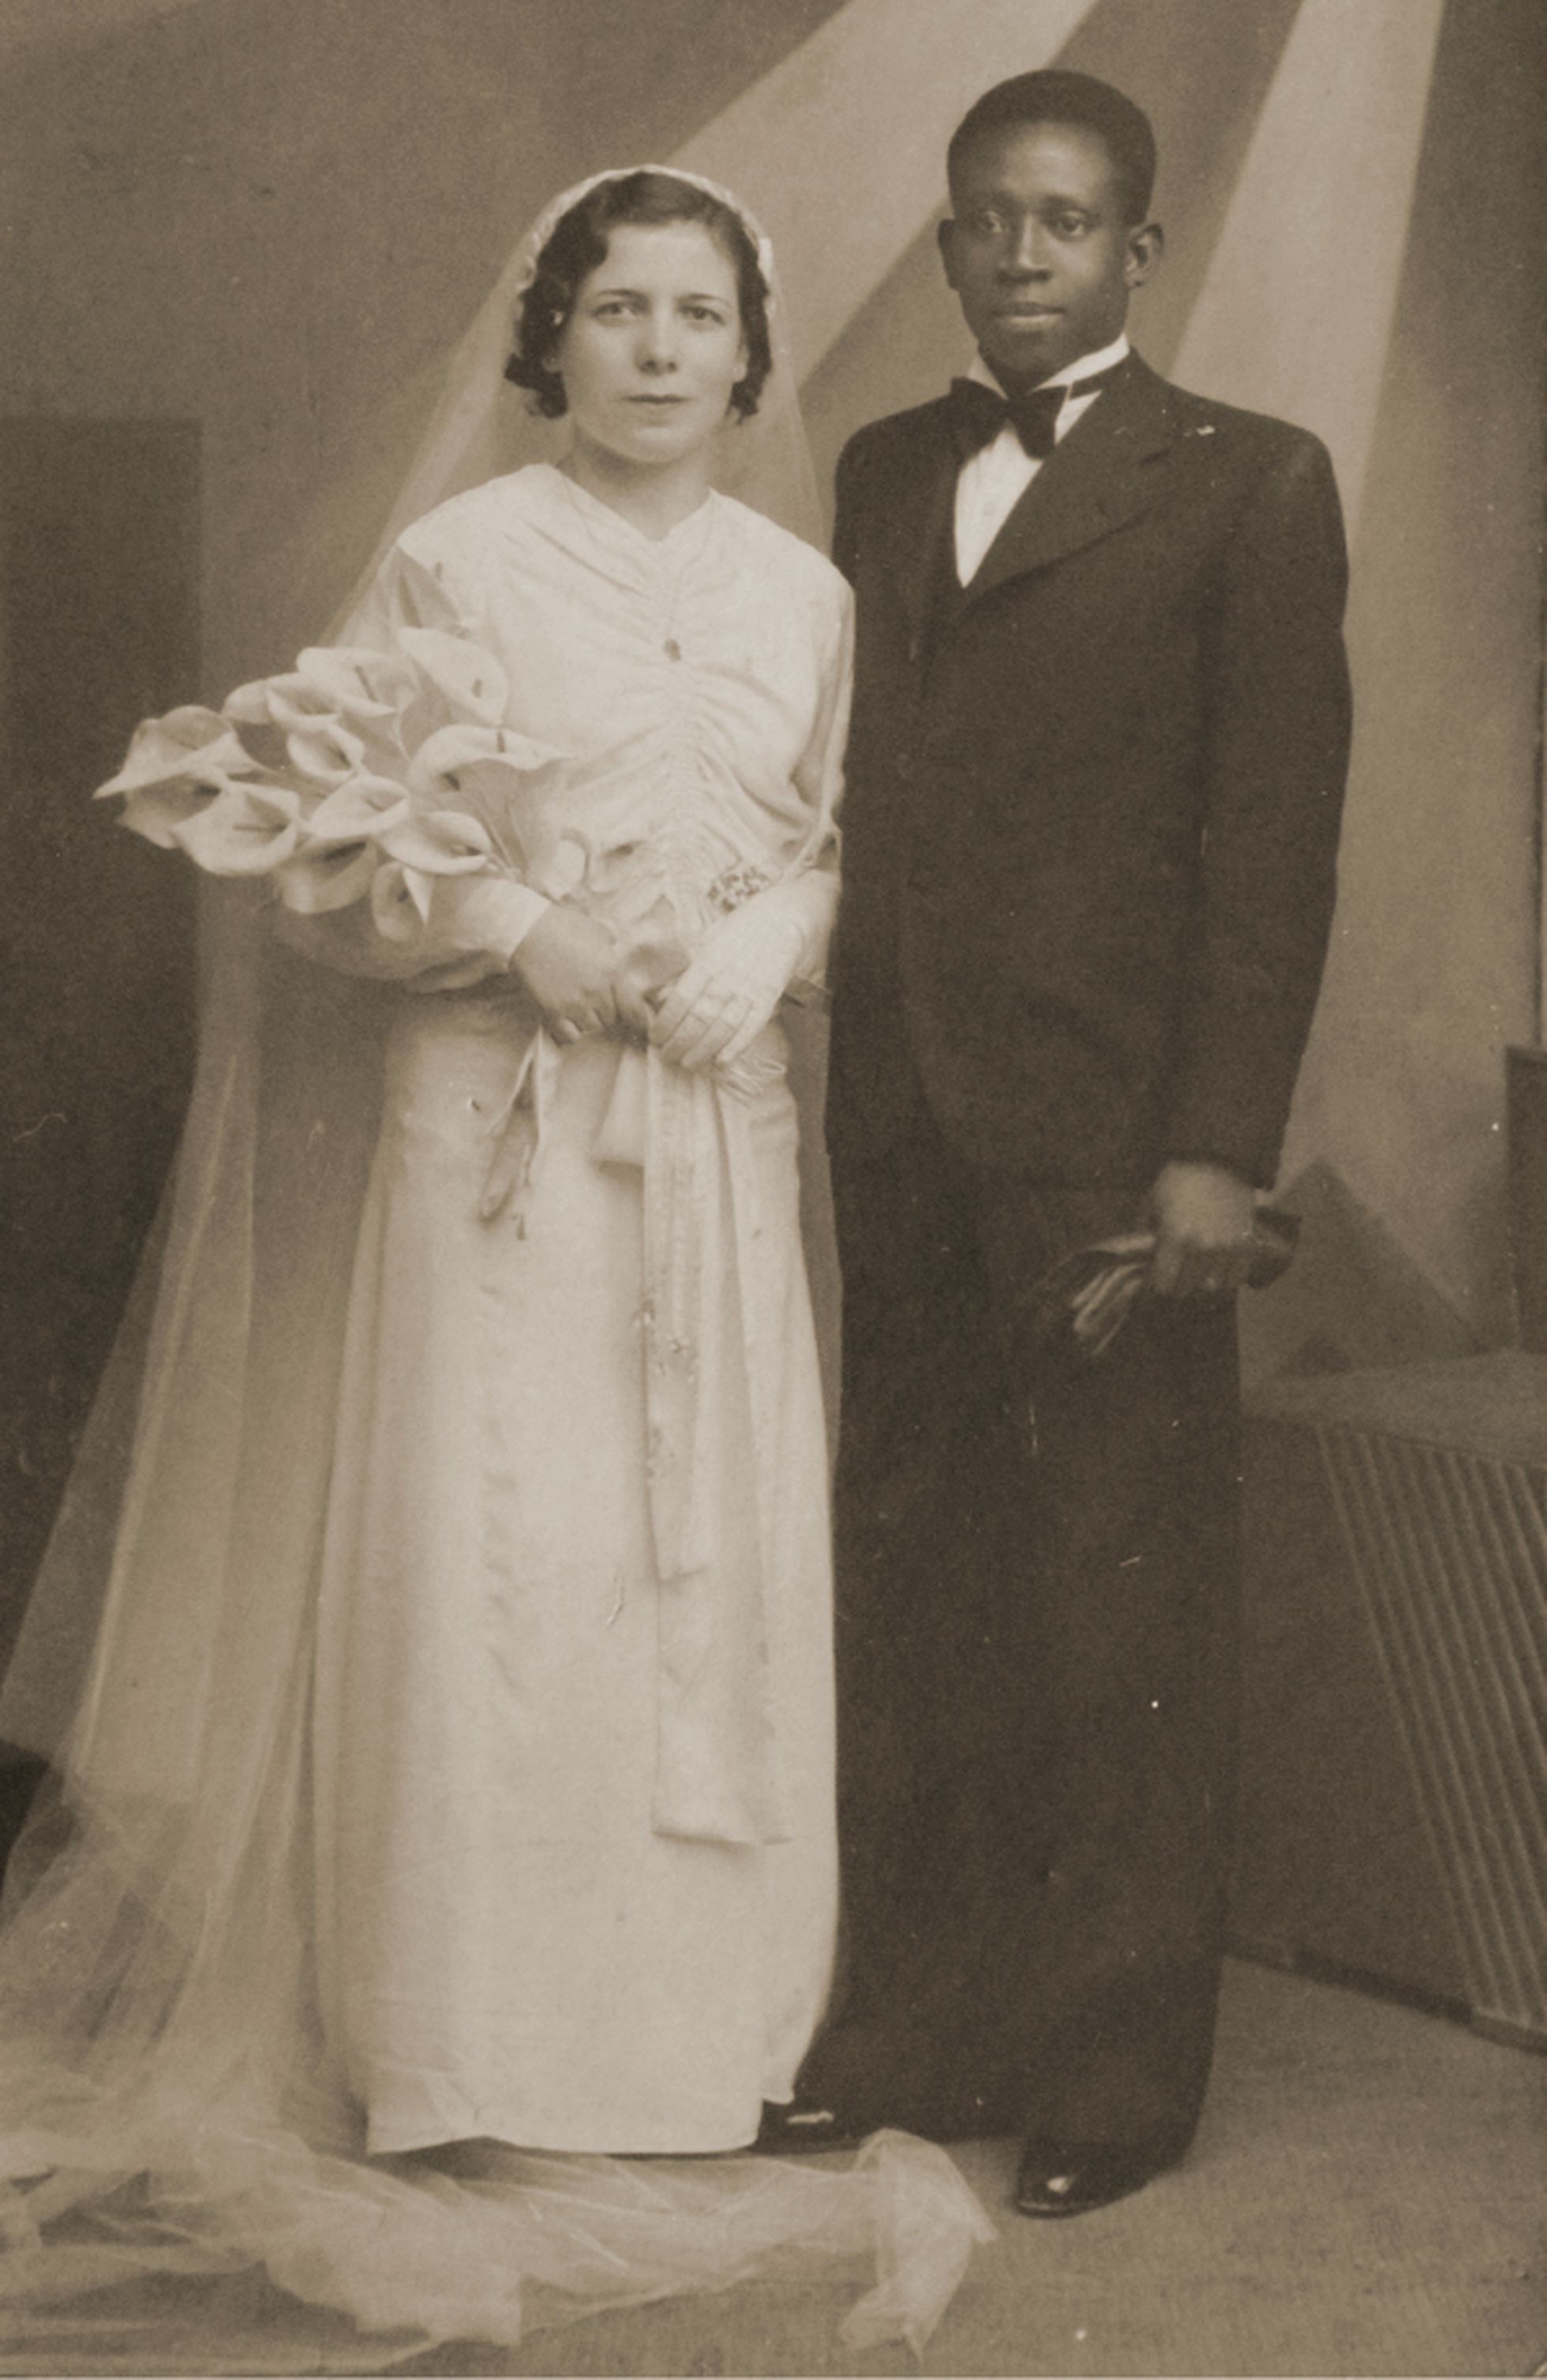 Foto de boda de José Epita y Cristina Sáez en Cartagena en 1936.